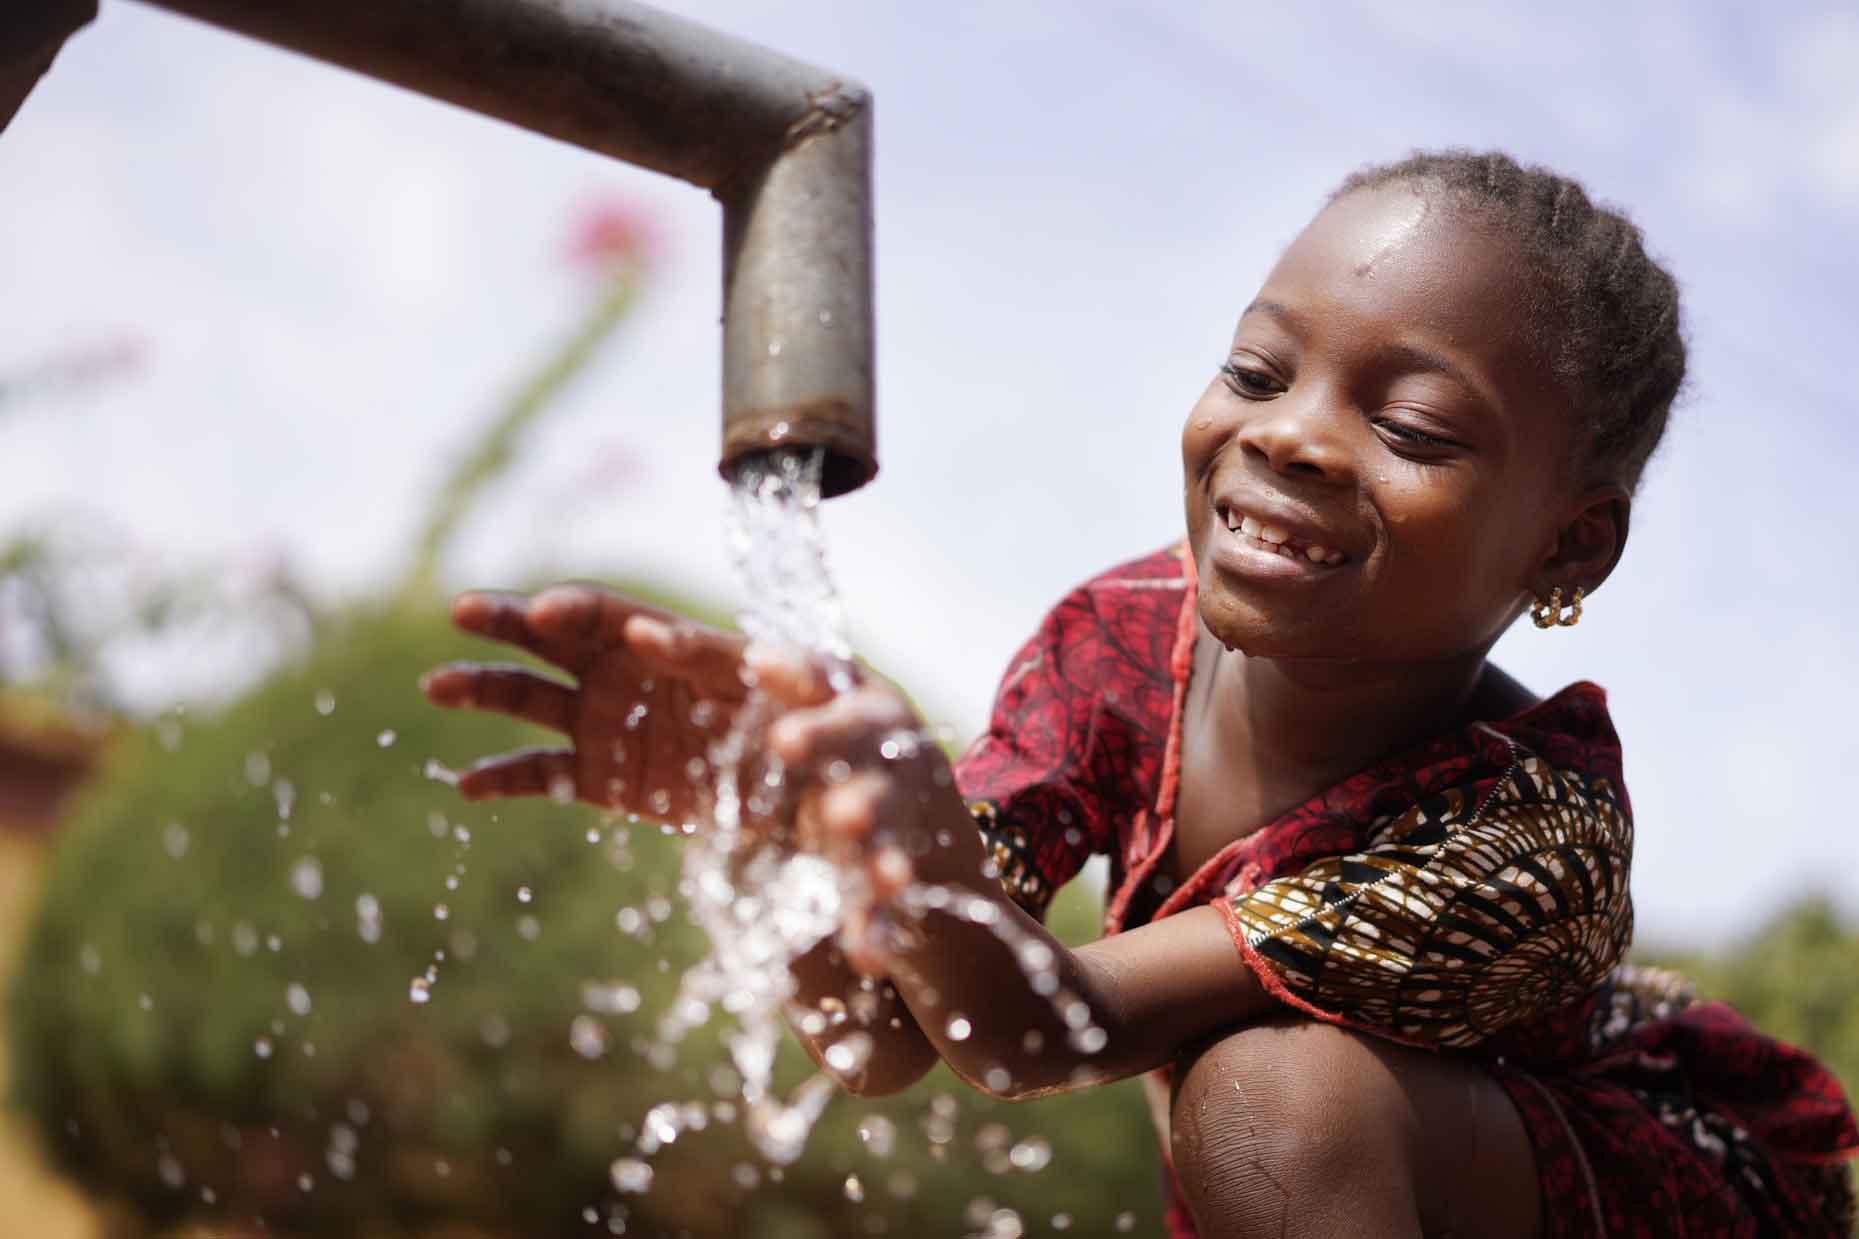 Darum ist Wasser kostbarer als Gold - Kleine Kinderzeitung